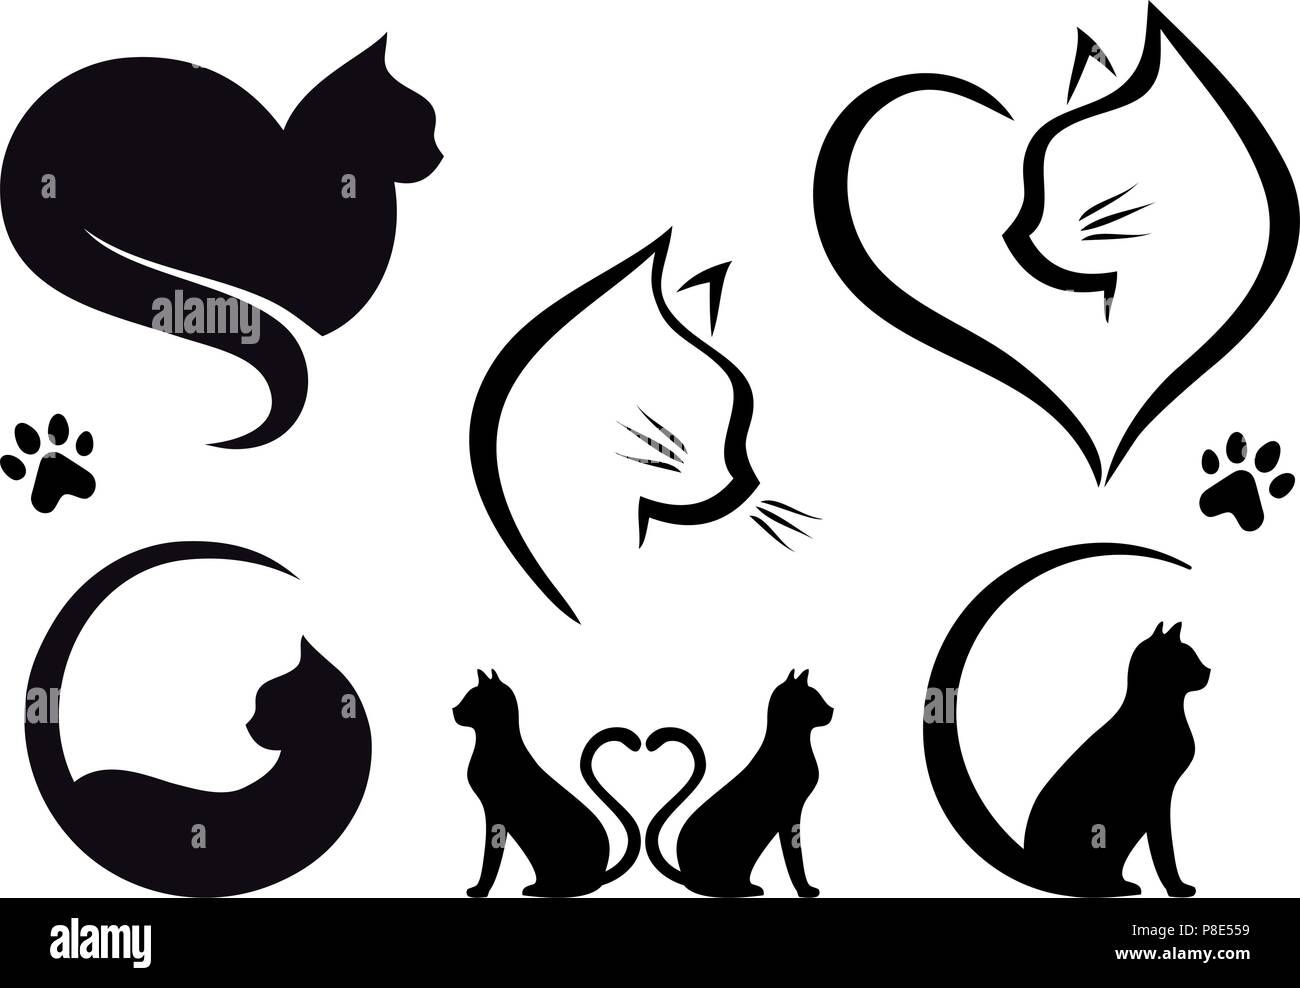 Logo del gatto immagini e fotografie stock ad alta risoluzione - Alamy